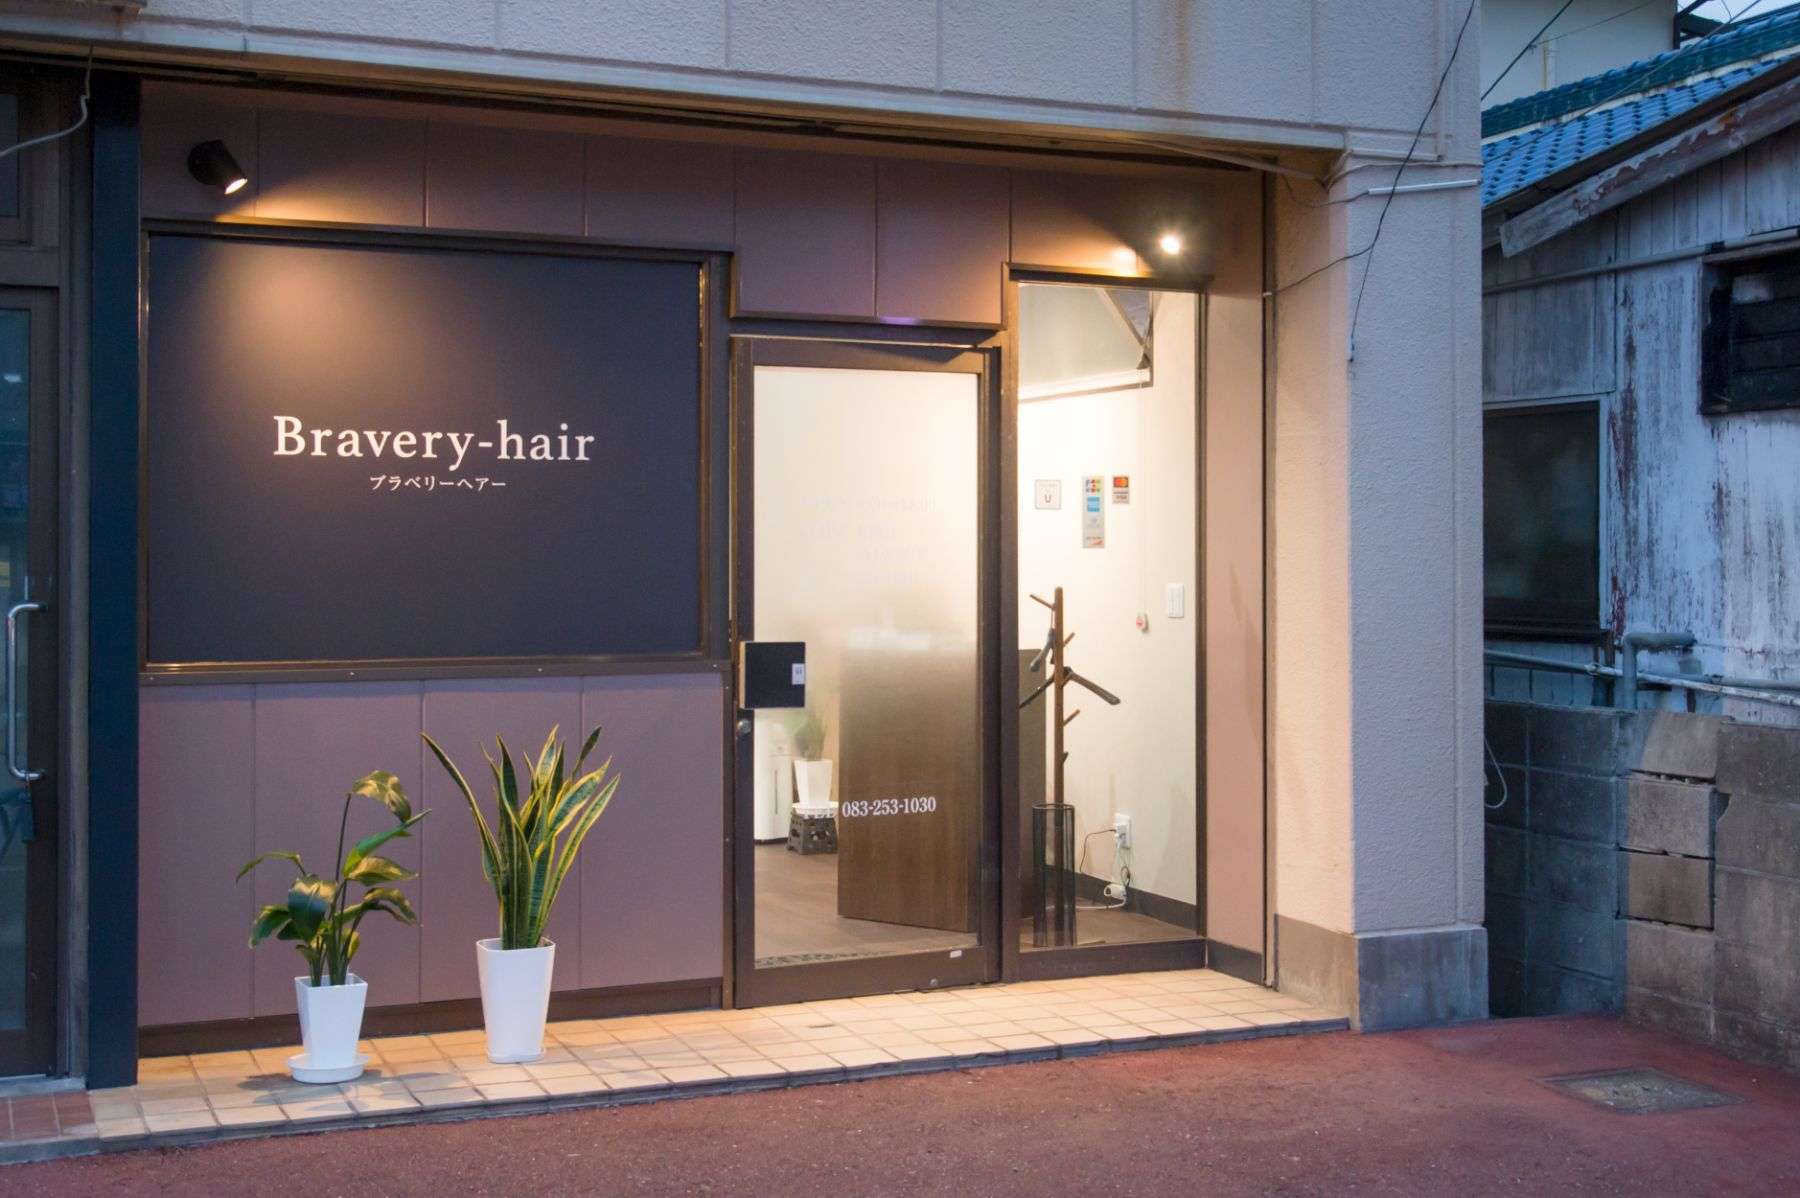 Bravery-hair